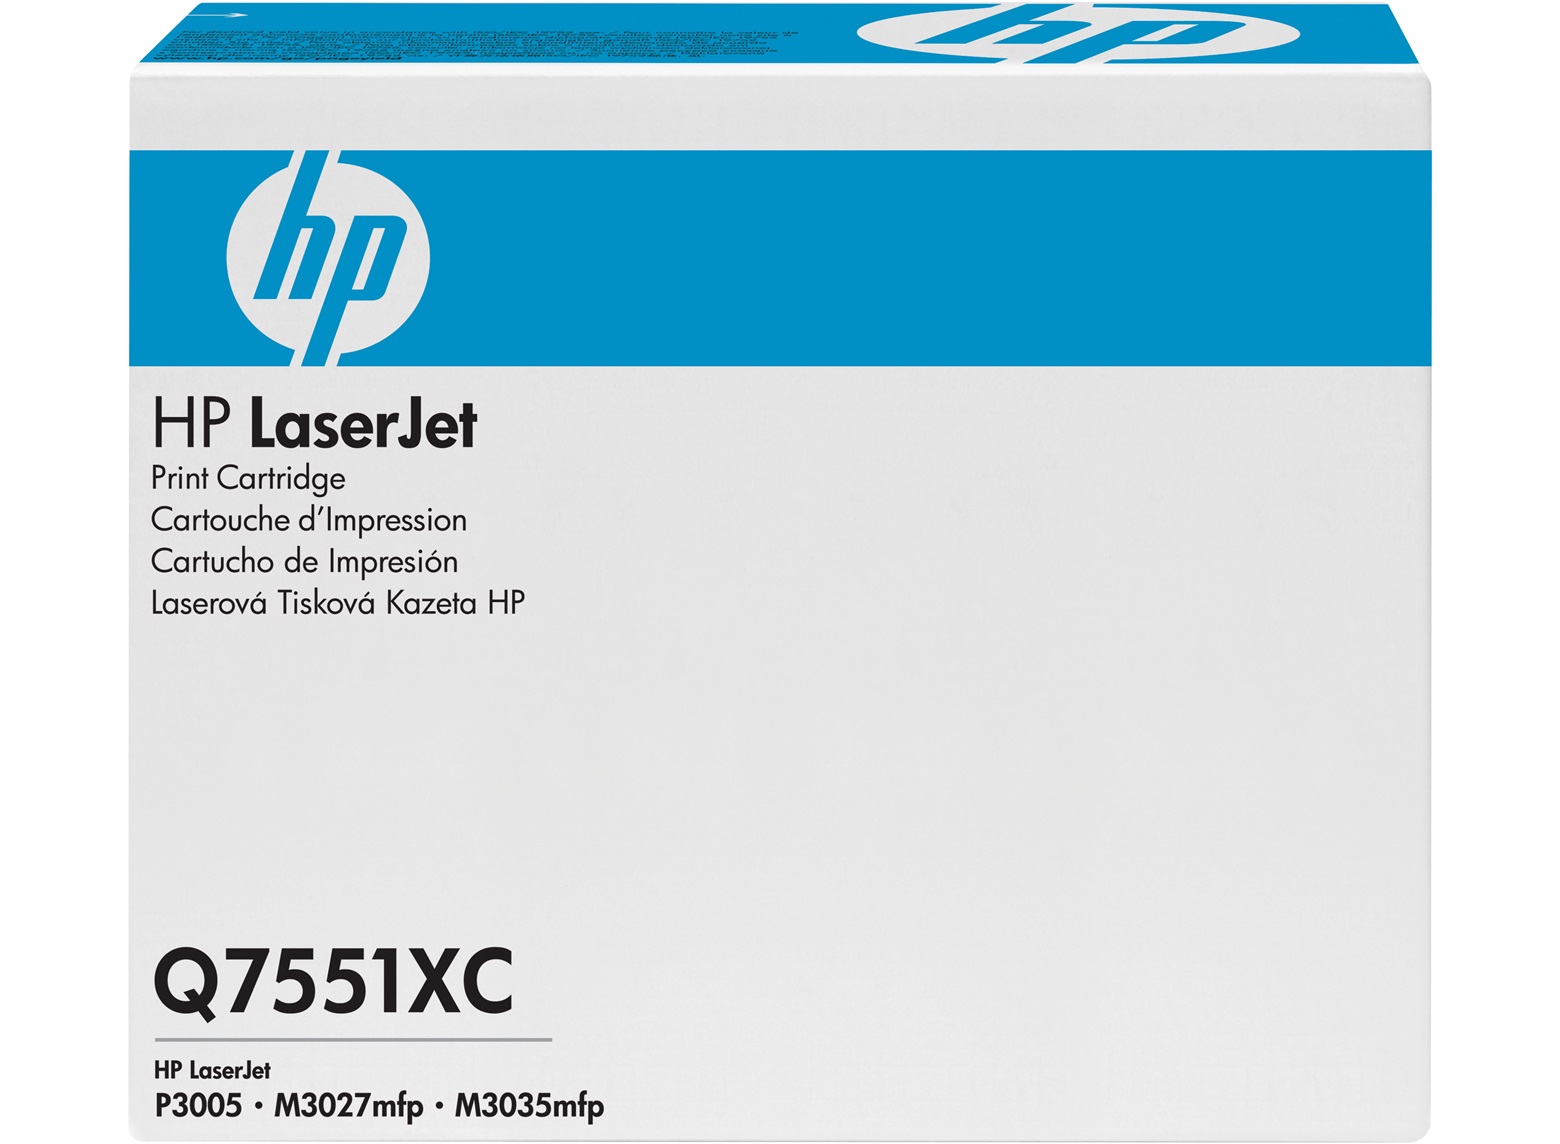 Hộp Mực in Hp 51XC laser Q7551XC Cartrigde - dùng cho máy in HP LaserJet P3005/M3035/ M3027 MFP prin